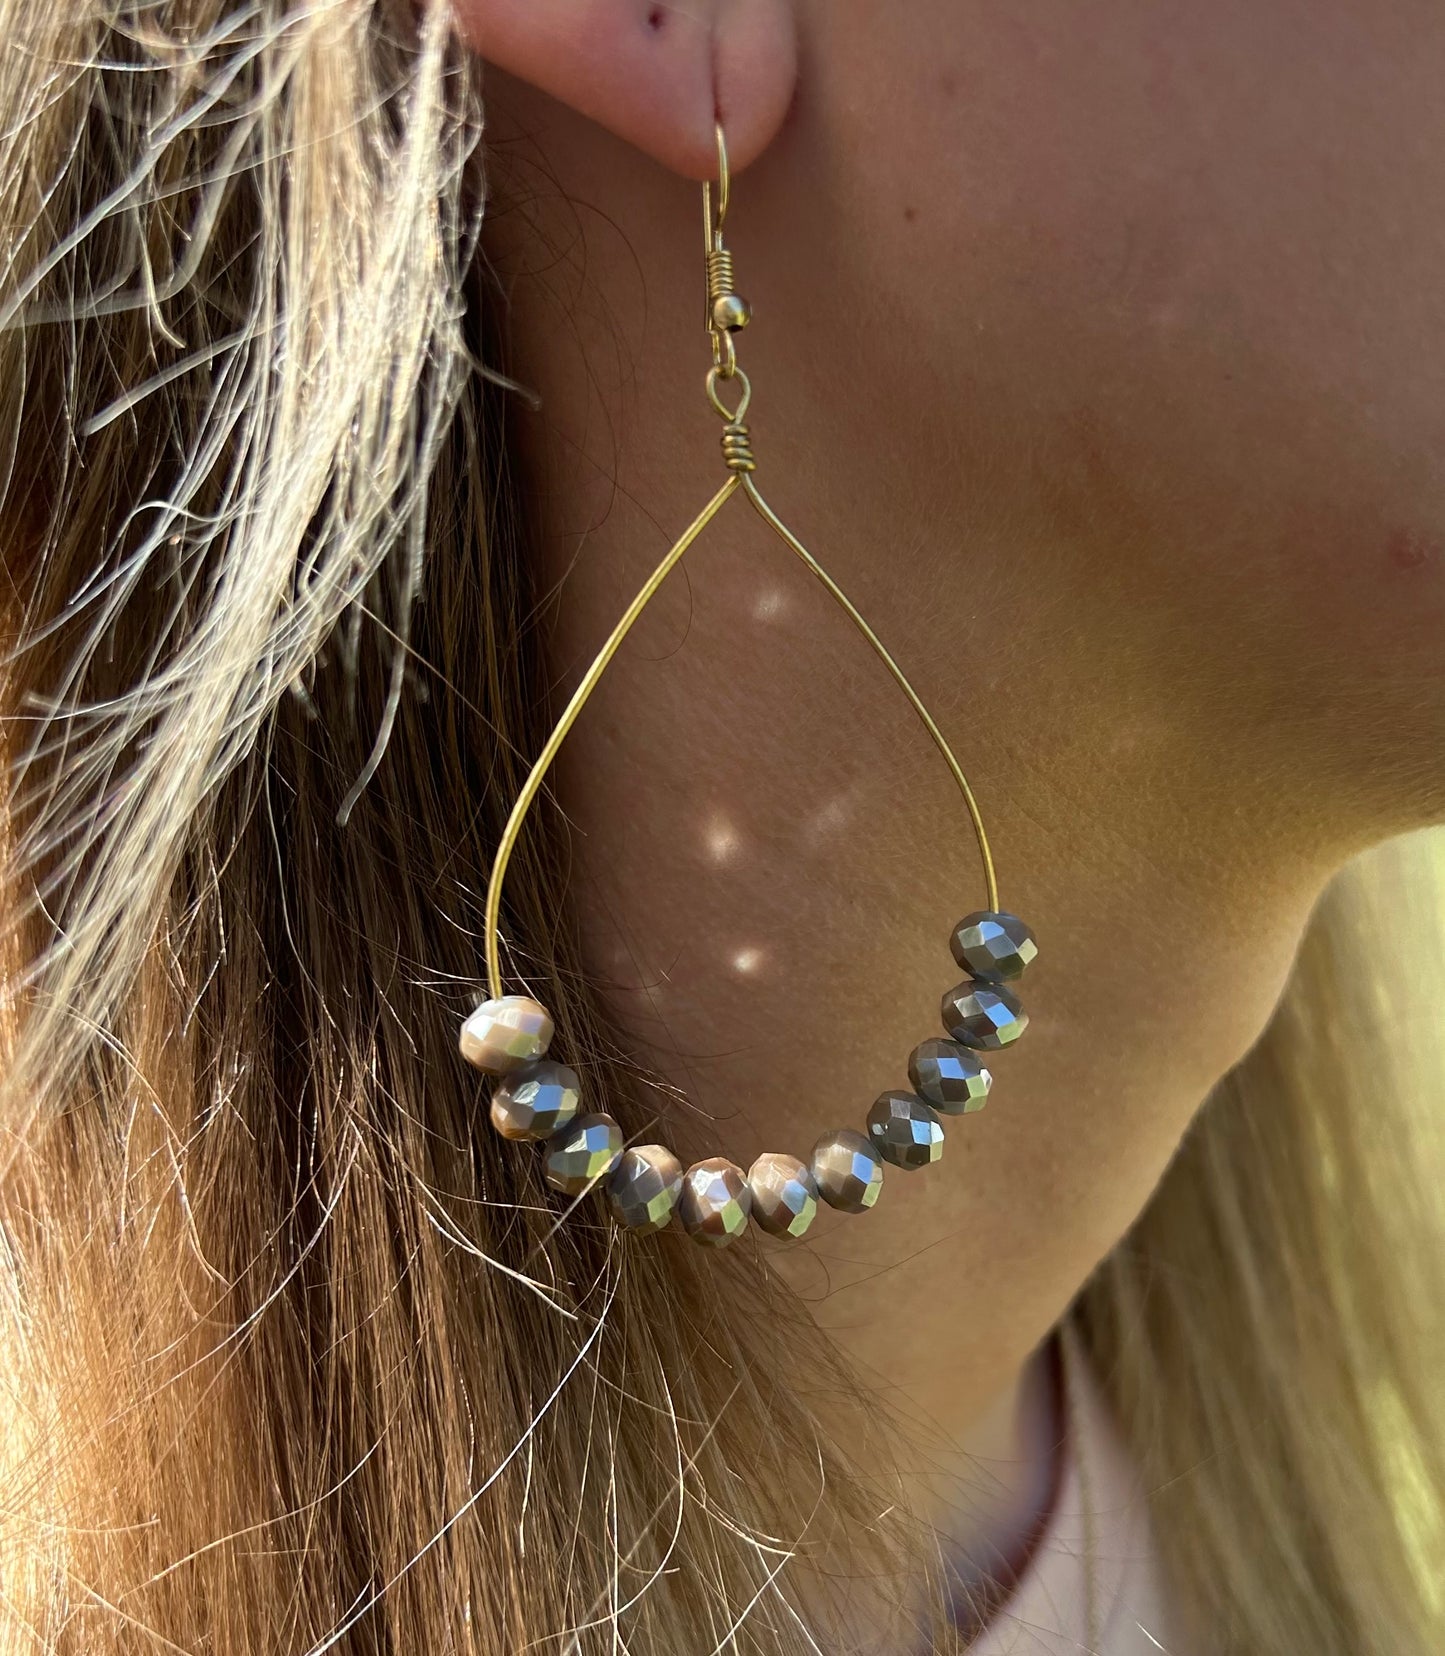 Glass faceted teardrop earrings